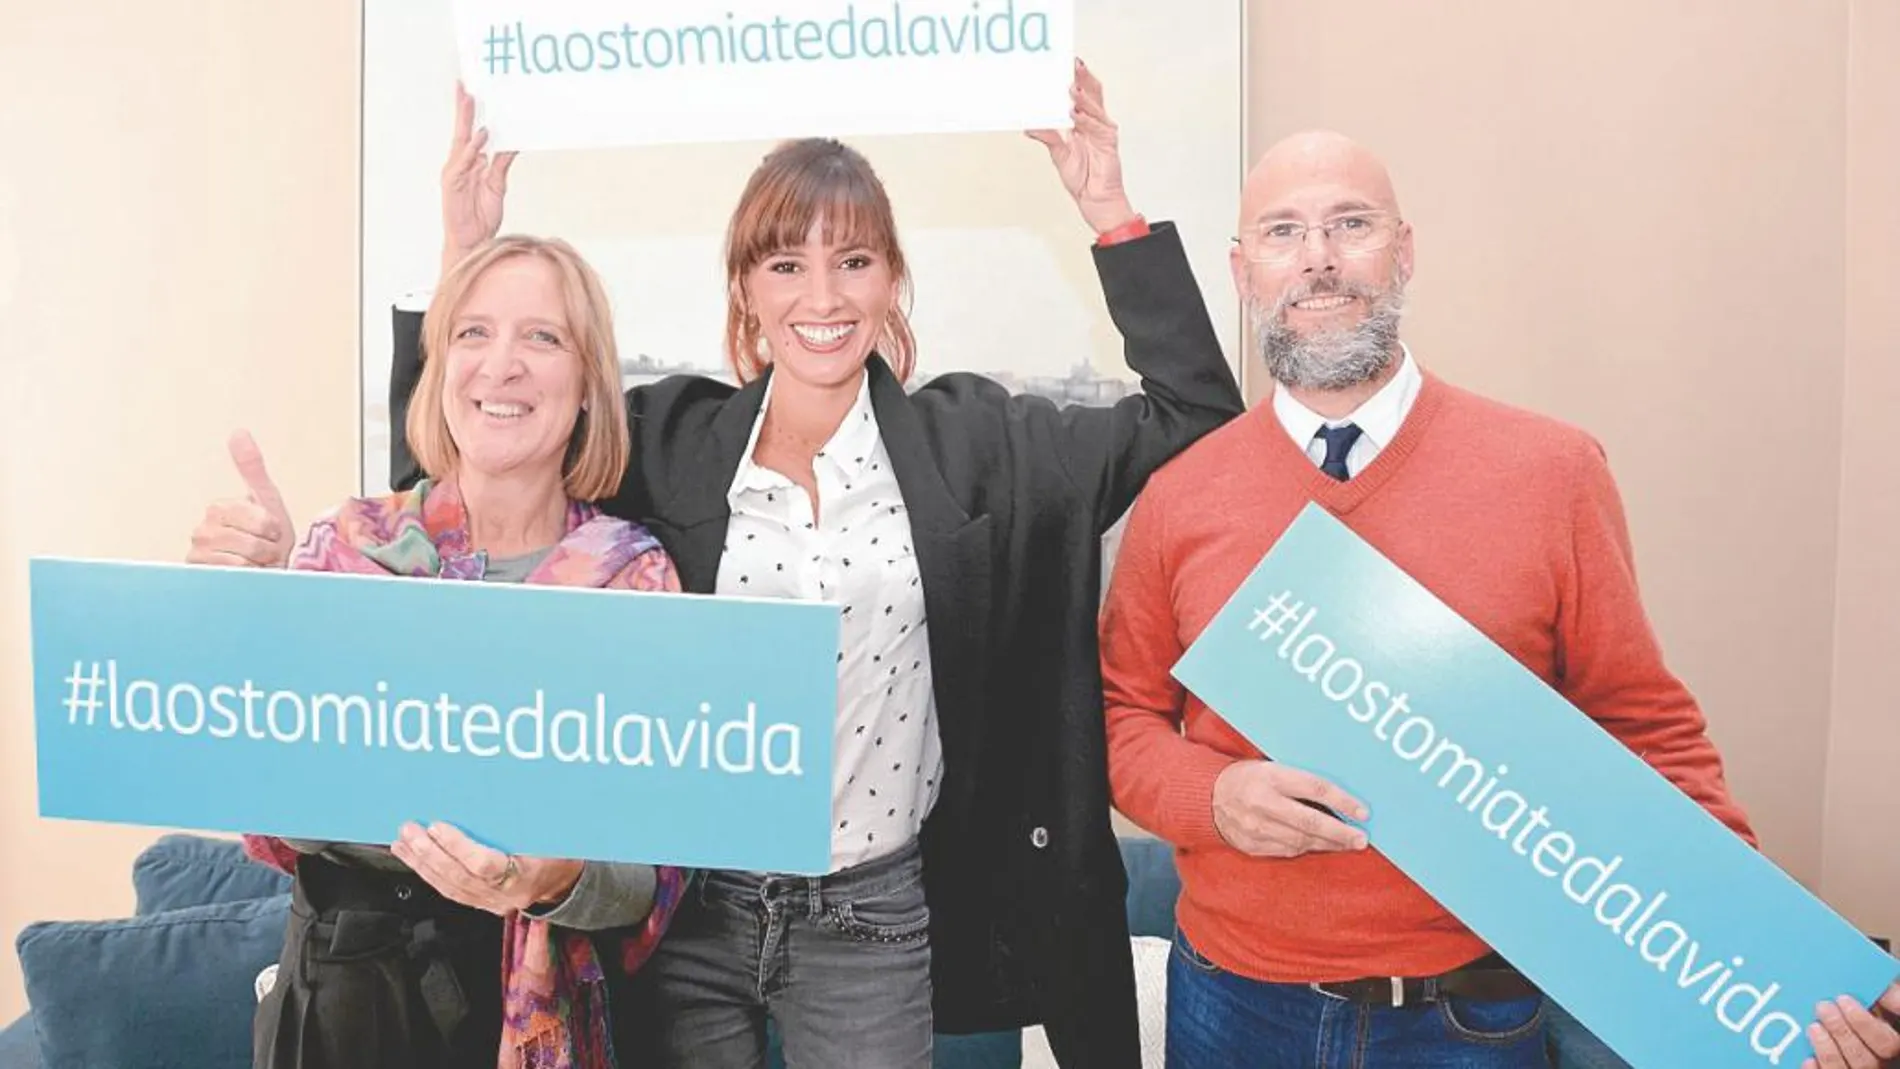 La actriz Marina San José posa junto a los pacientes Natividad Leal y Josep Porriach para la campaña #laostomíatedalavida